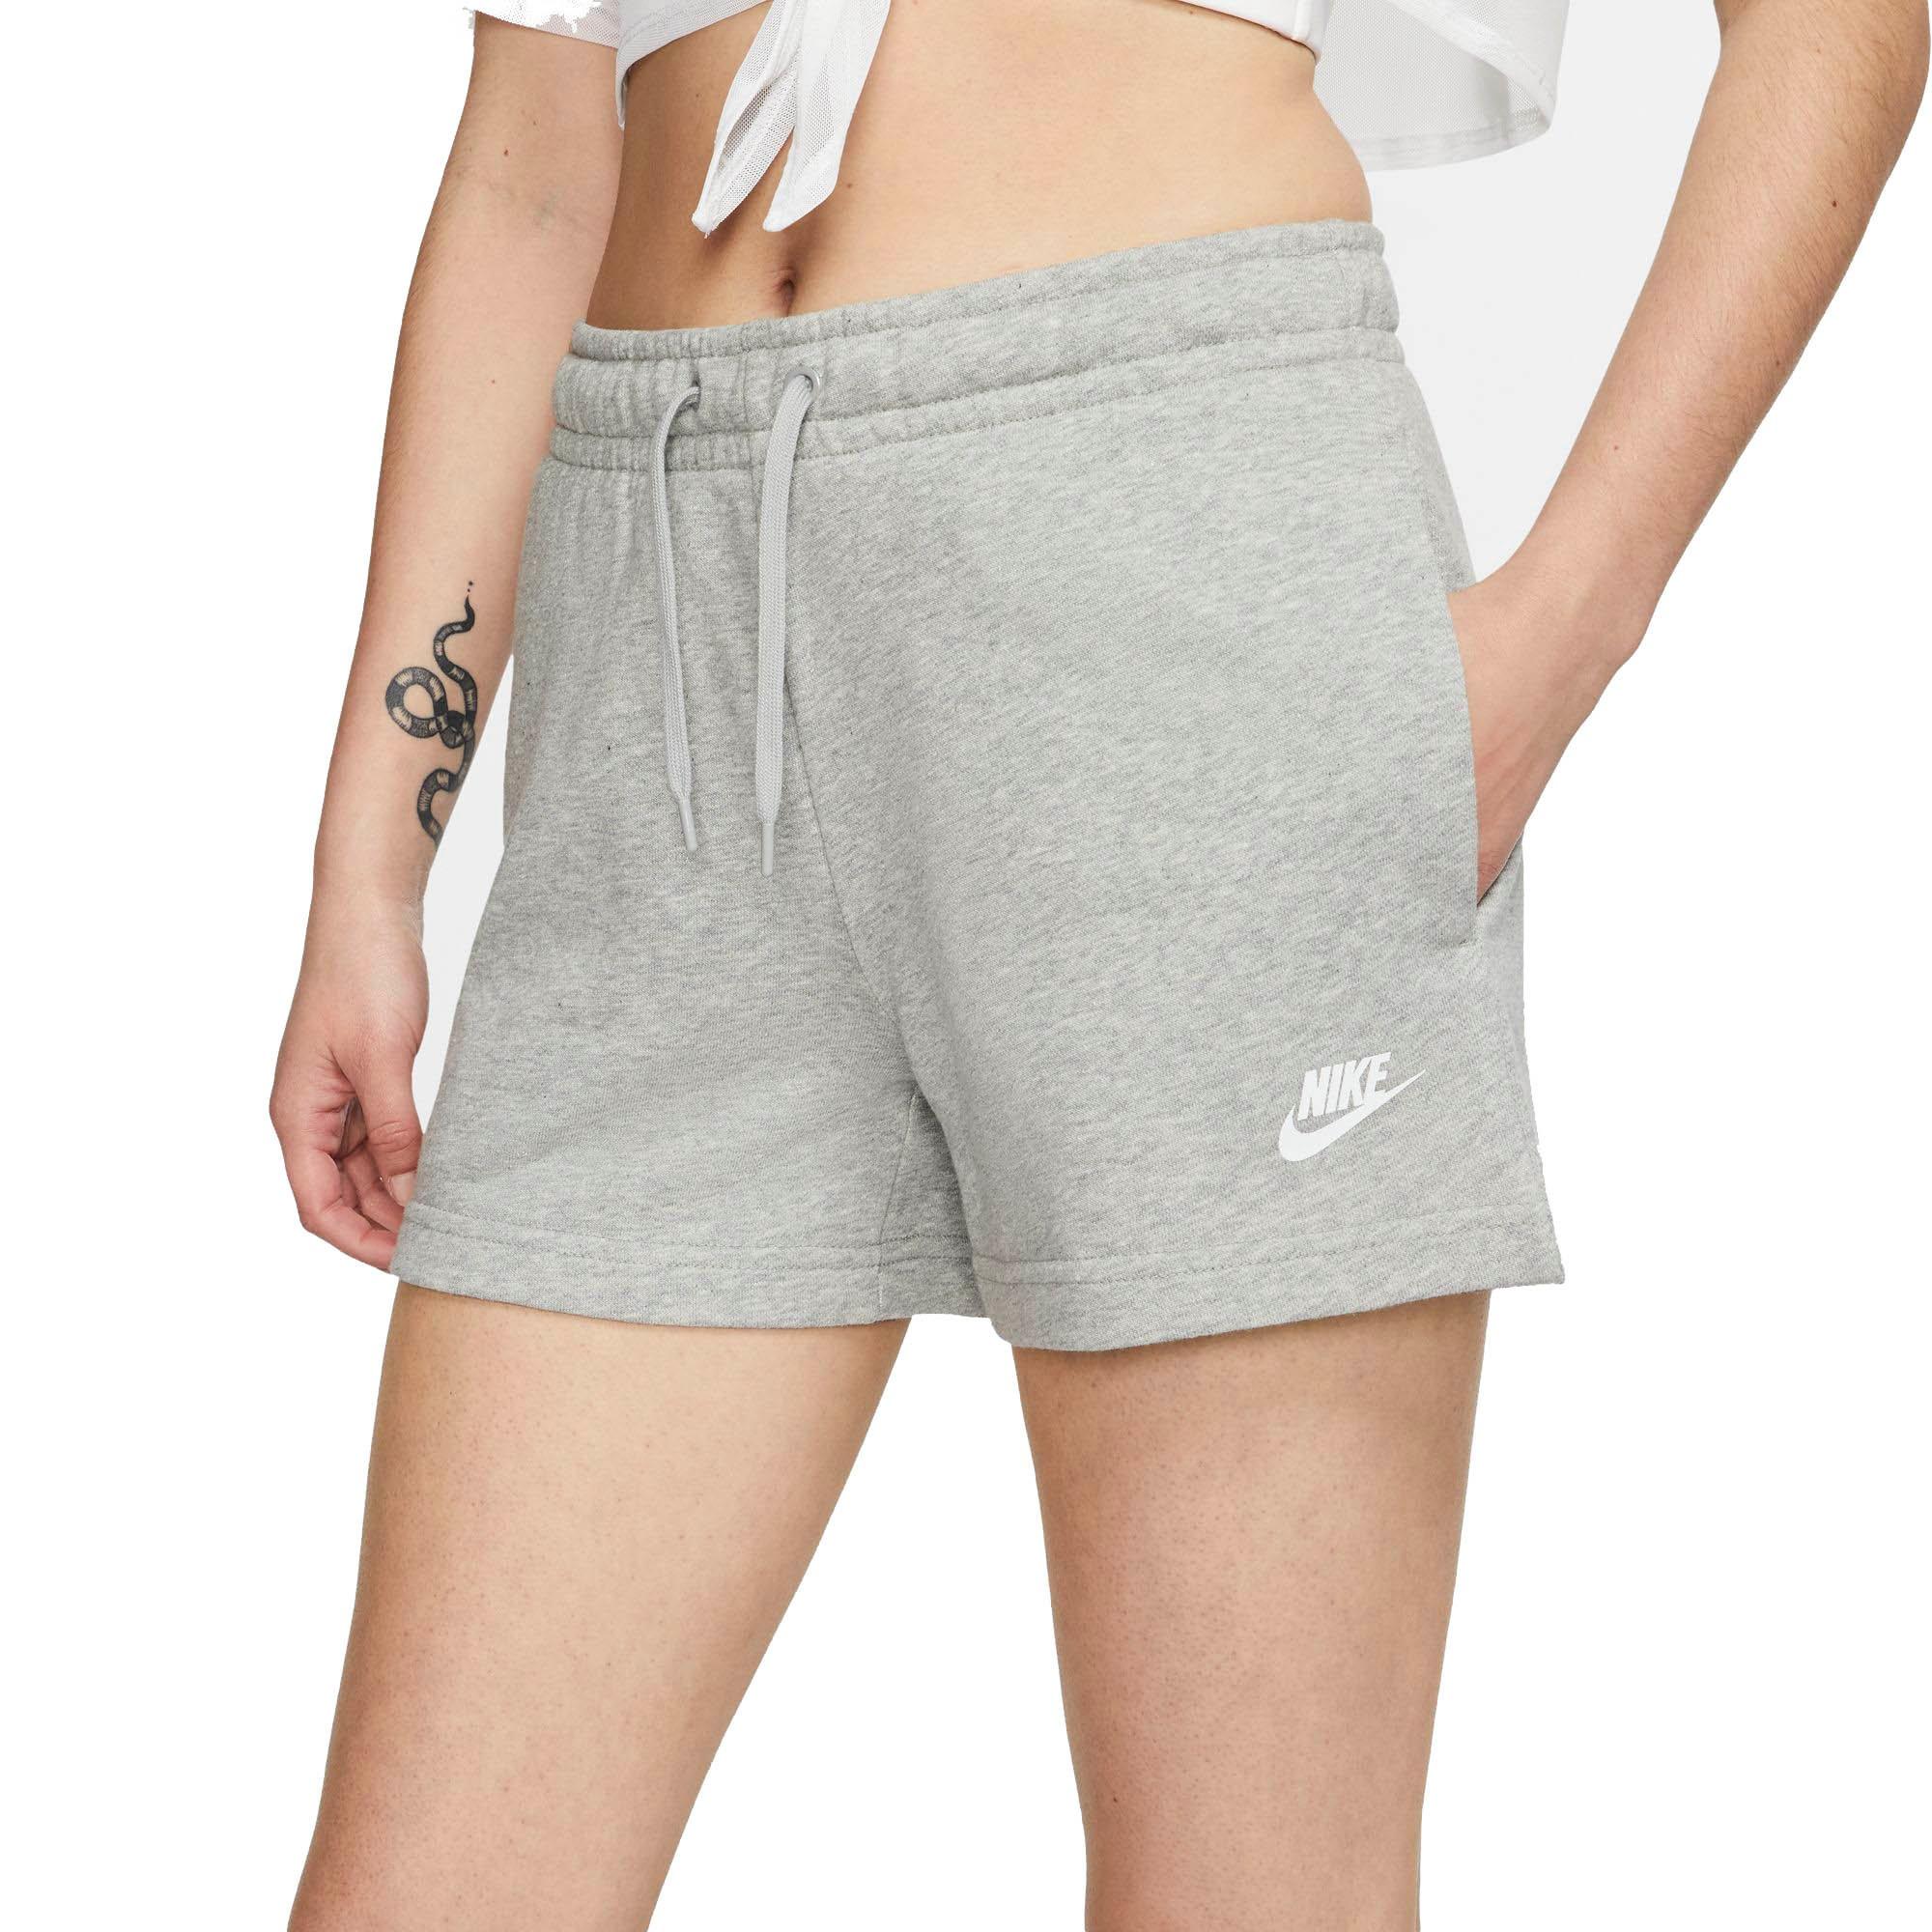 nike sportswear womens shorts